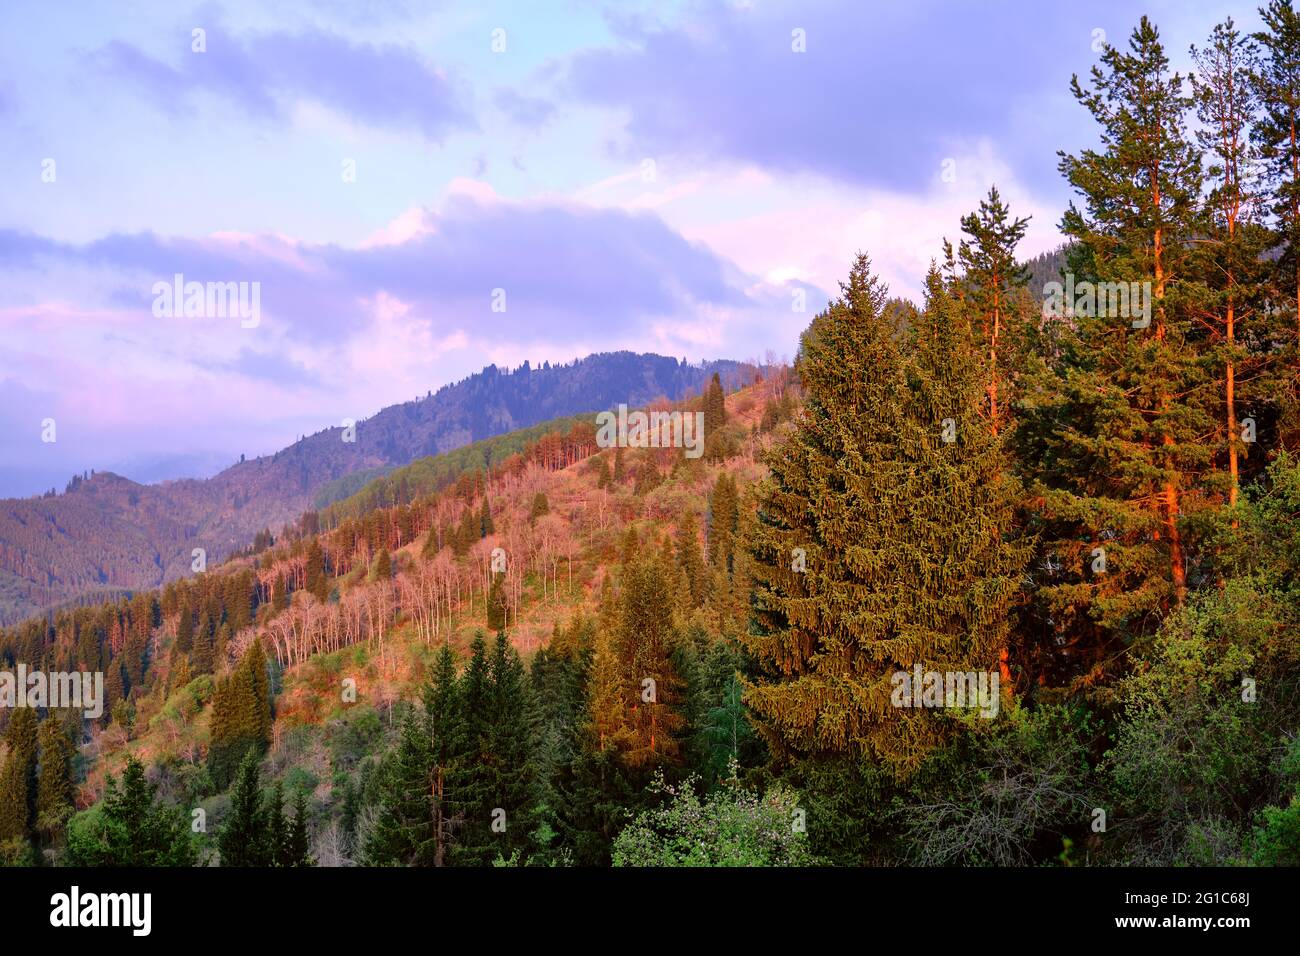 Collines de montagne surcultivées avec des forêts de conifères et de feuillus illuminées par la lumière douce du soleil couchant Banque D'Images